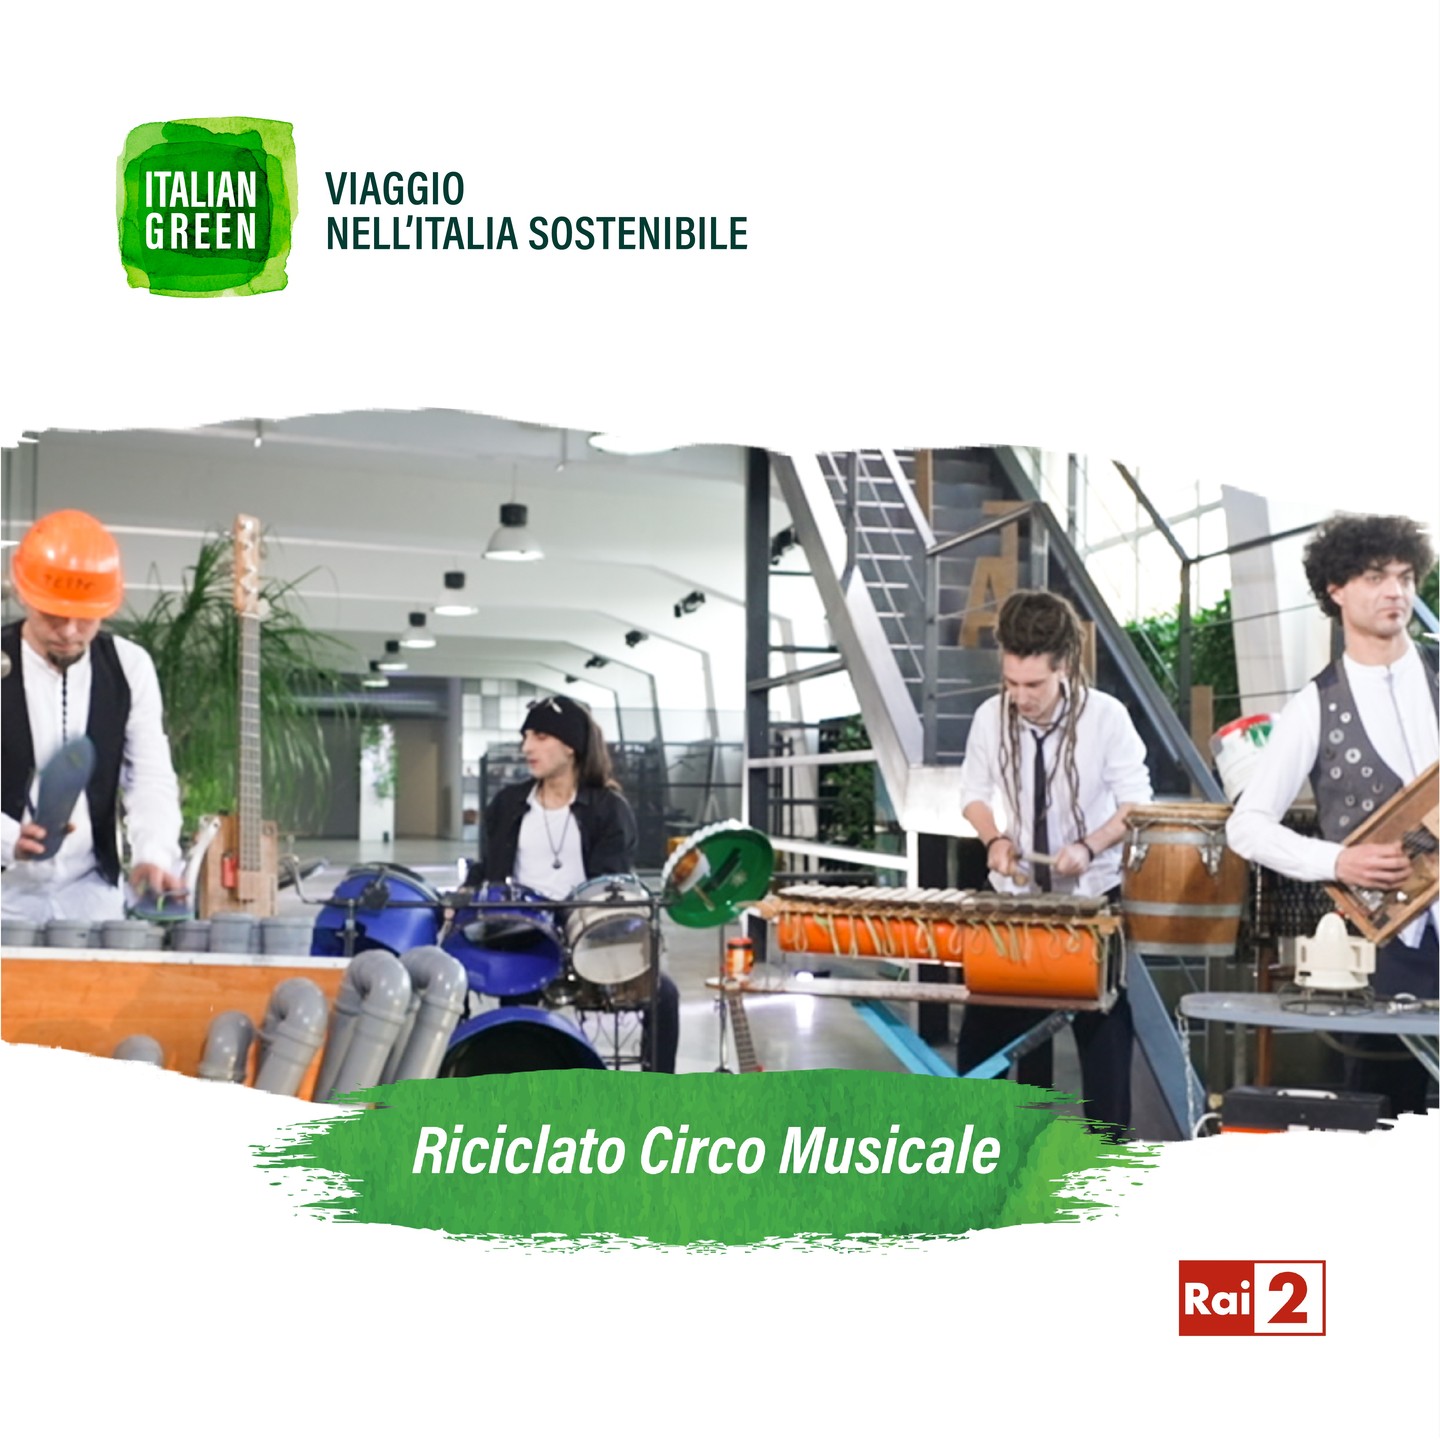 riciclato circo musicale Italian Green